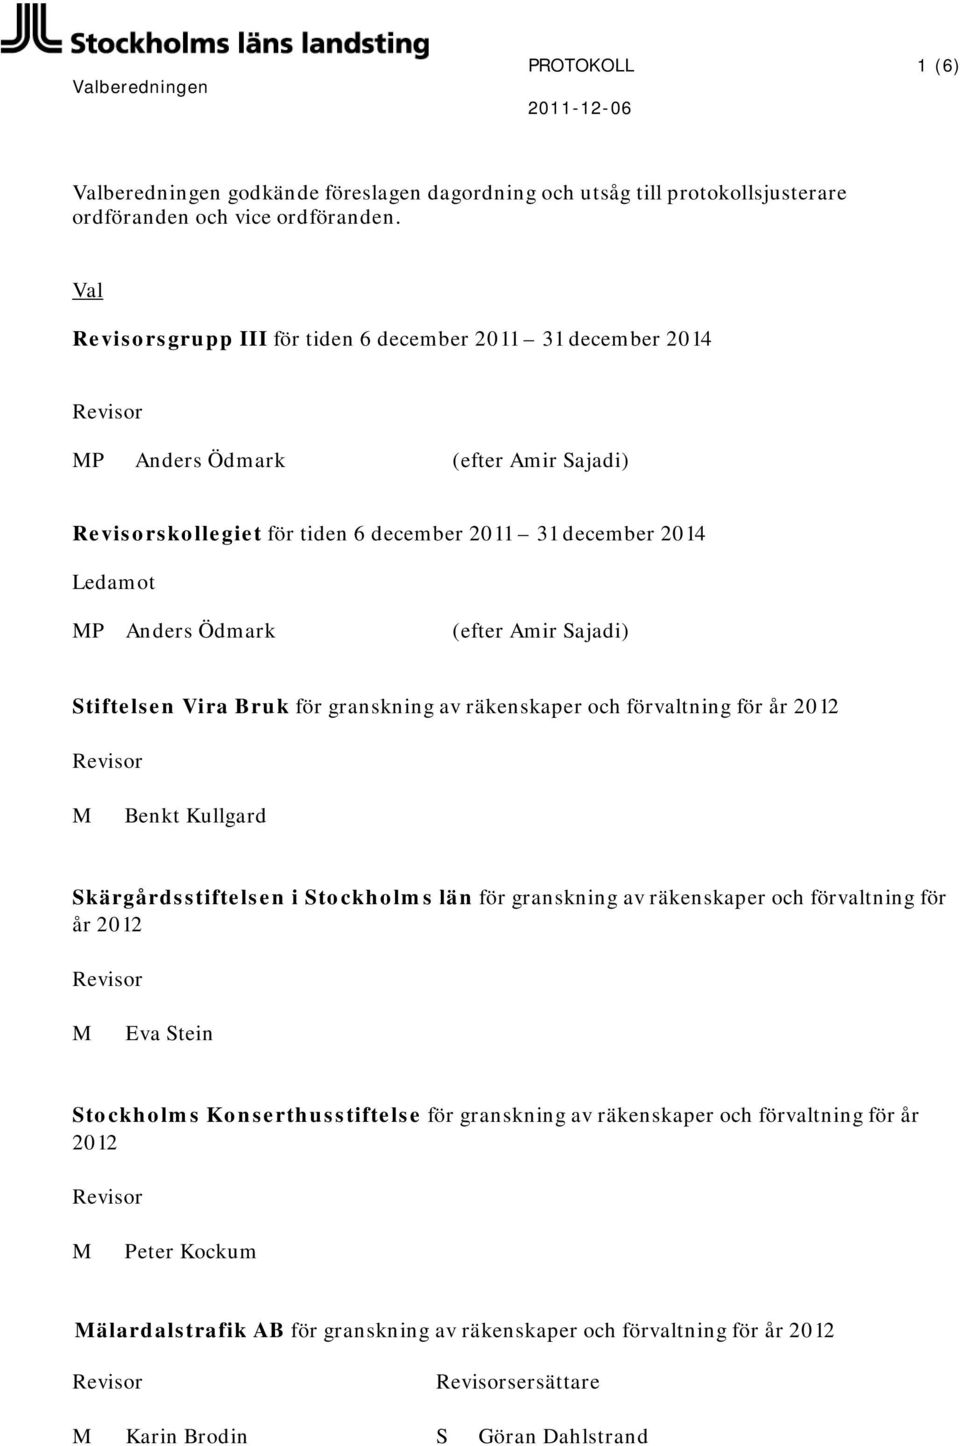 Stiftelsen Vira Bruk för granskning av räkenskaper och förvaltning för år 2012 Benkt Kullgard Skärgårdsstiftelsen i Stockholms län för granskning av räkenskaper och förvaltning för år 2012